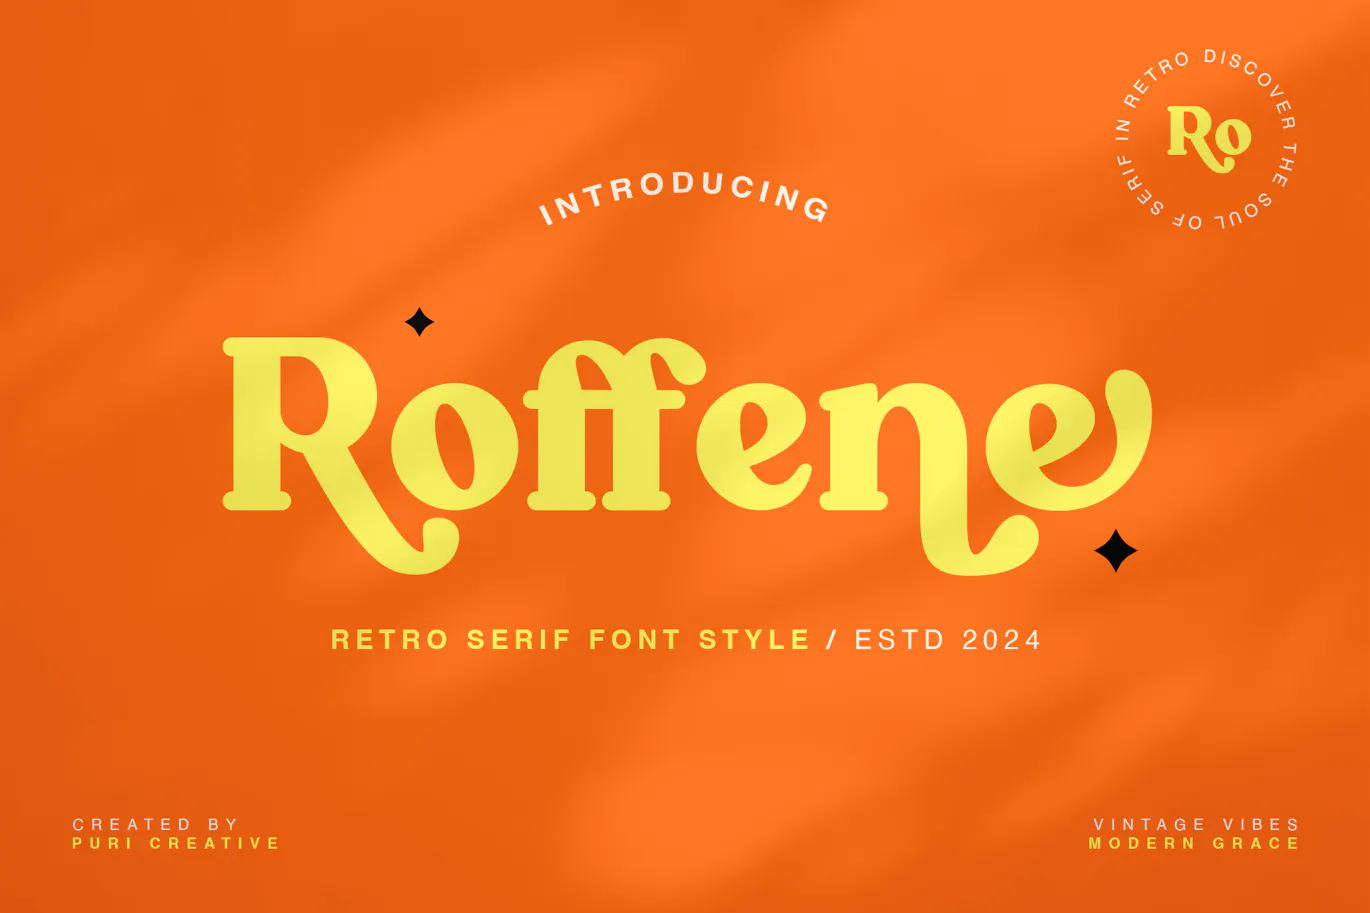 复古风格的英文粗体衬线字体 - Roffene - Retro Serif Style Font 设计字体 第10张